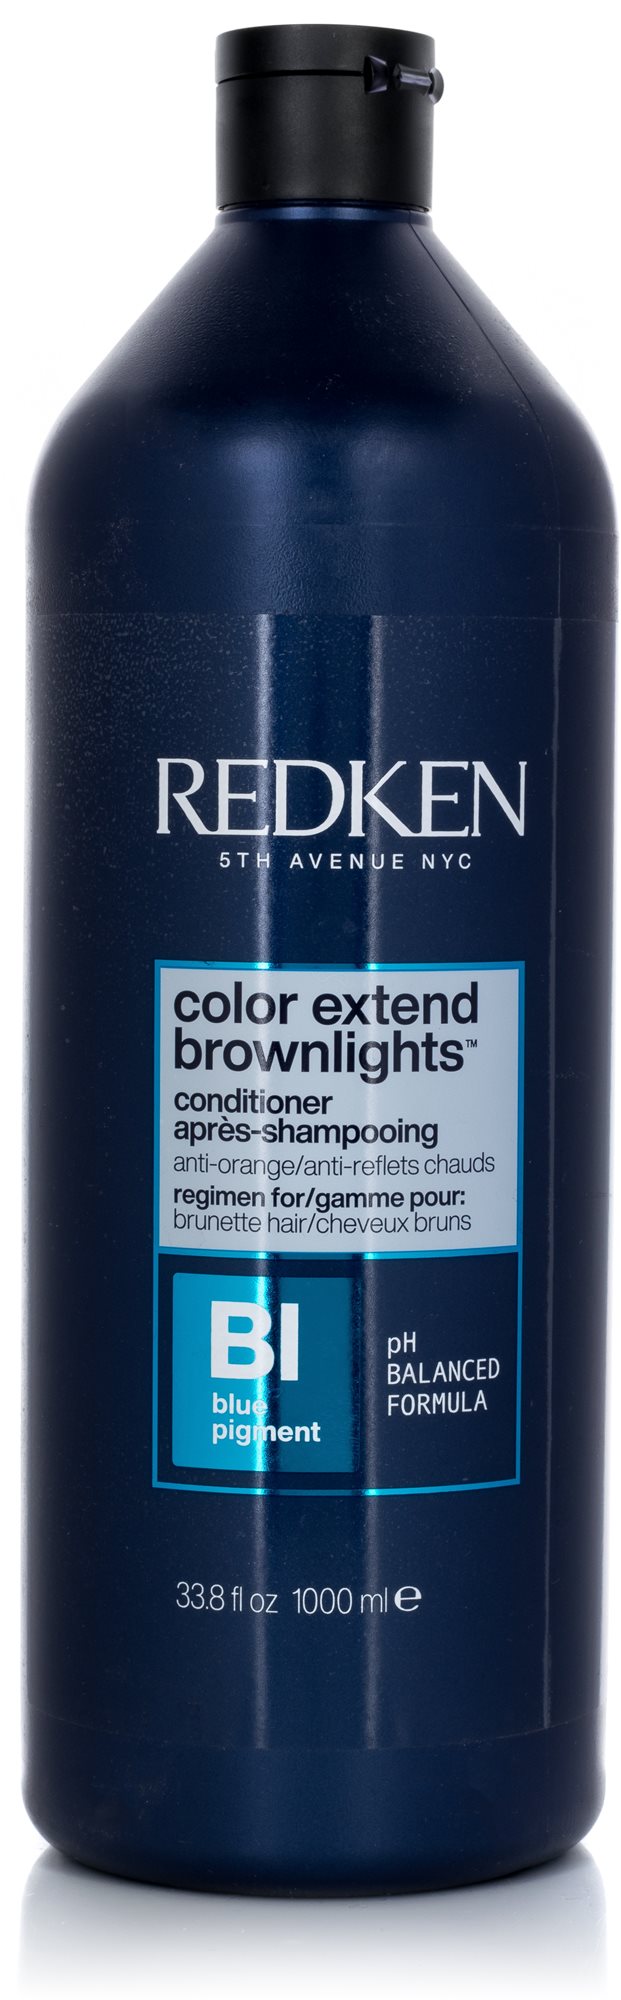 REDKEN Color Extend Brownlights Conditioner 1000 ml